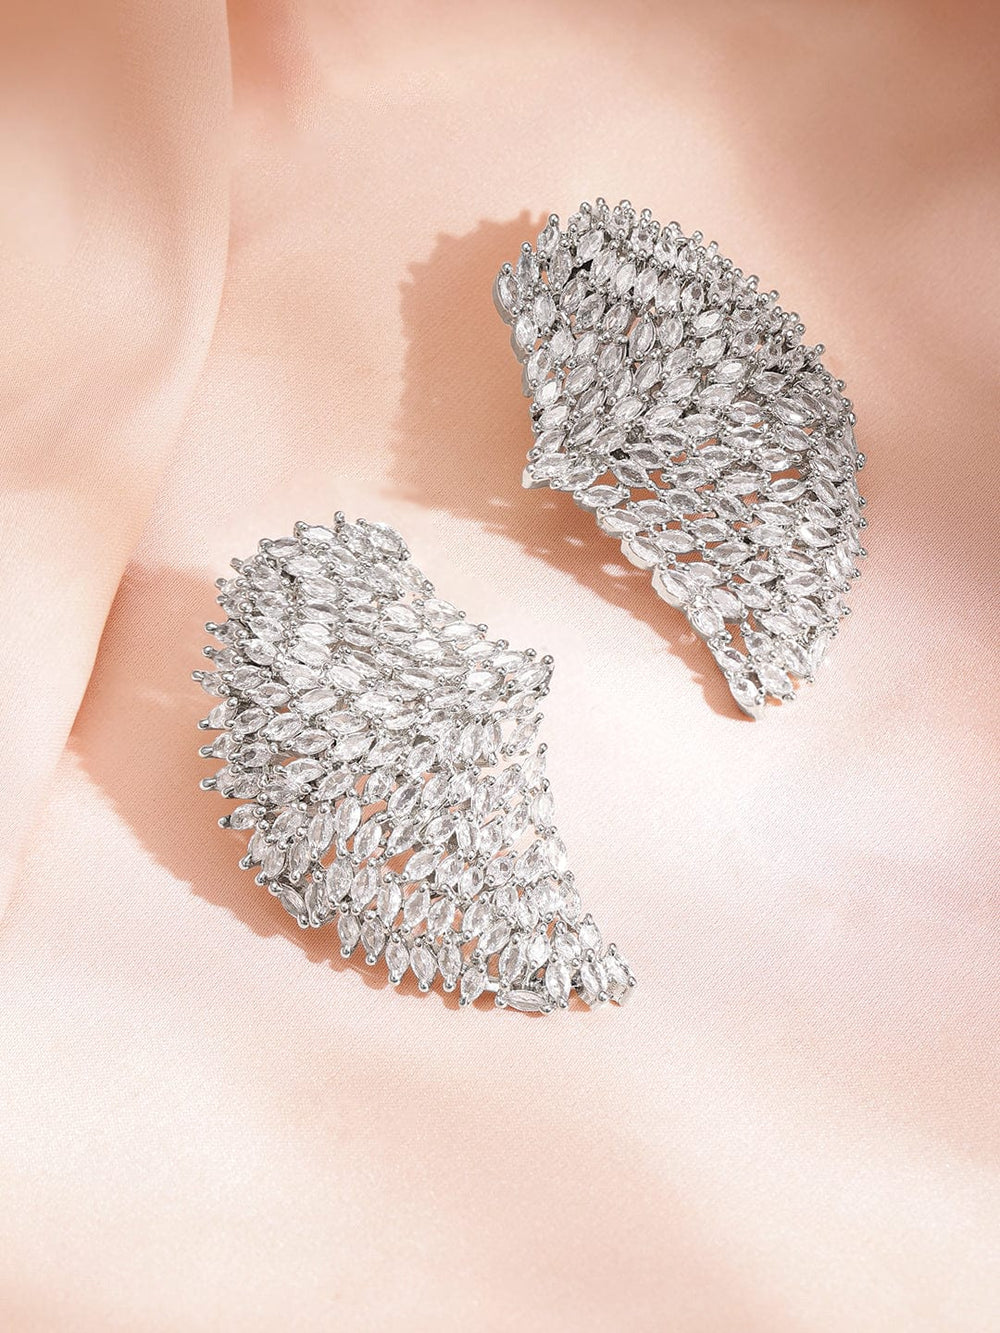 Rubans Rhodium Plated Pave American Diamond Studded Twilight Sparklers Earrings Studs